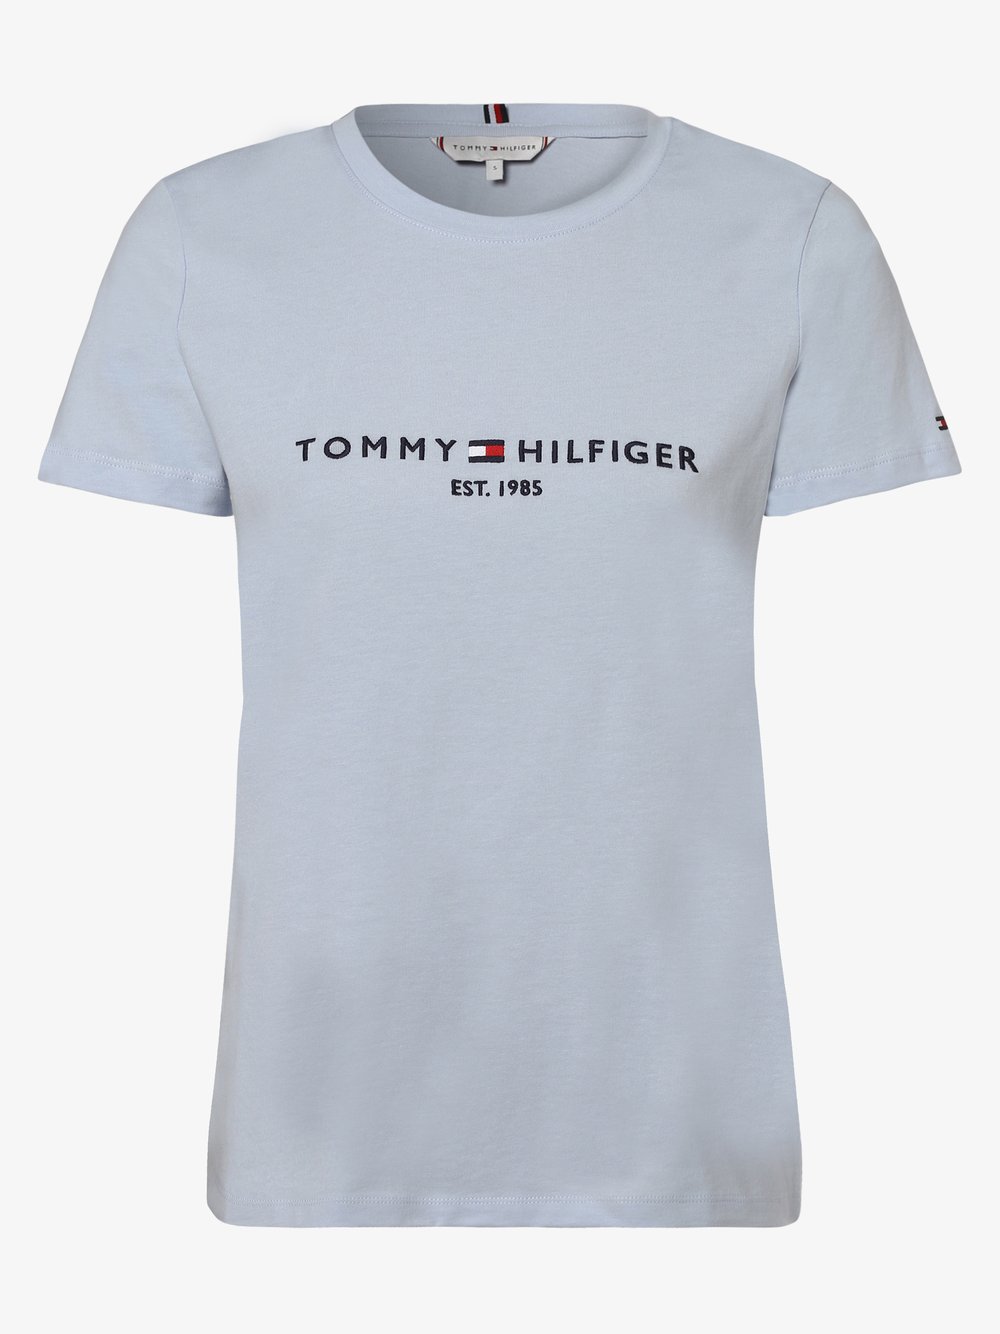 Tommy Hilfiger - T-shirt damski, niebieski Tommy Hilfiger